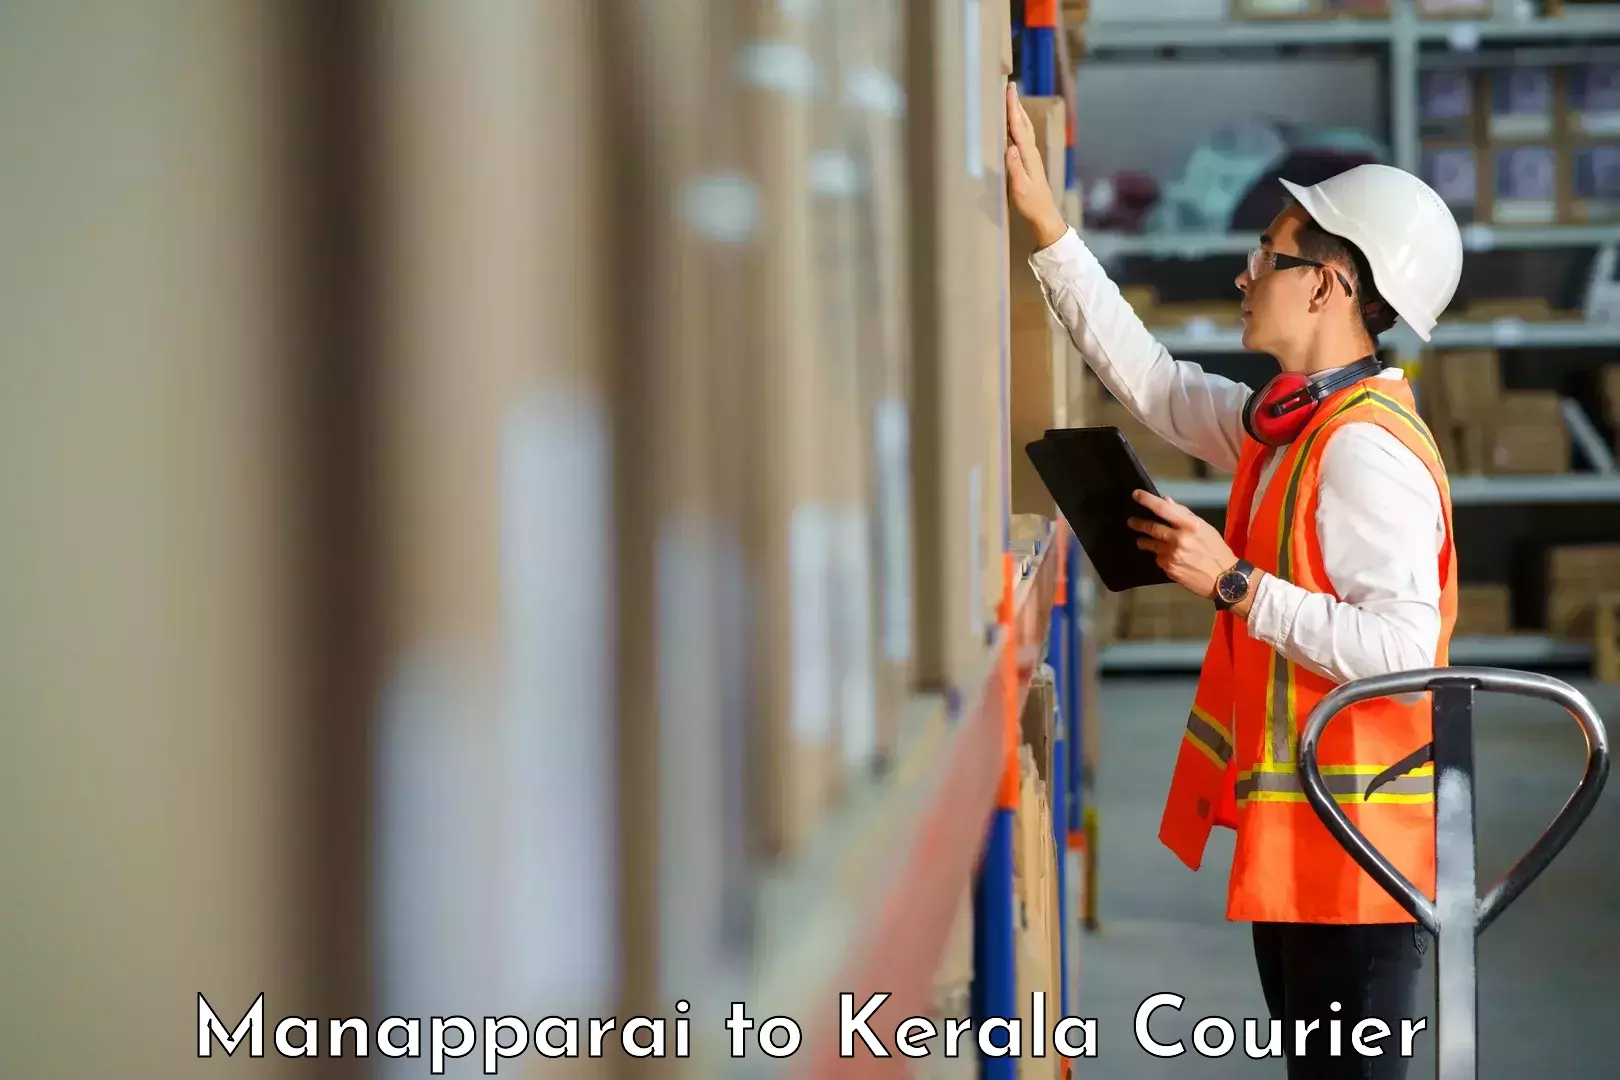 High-capacity parcel service Manapparai to Cochin Port Kochi